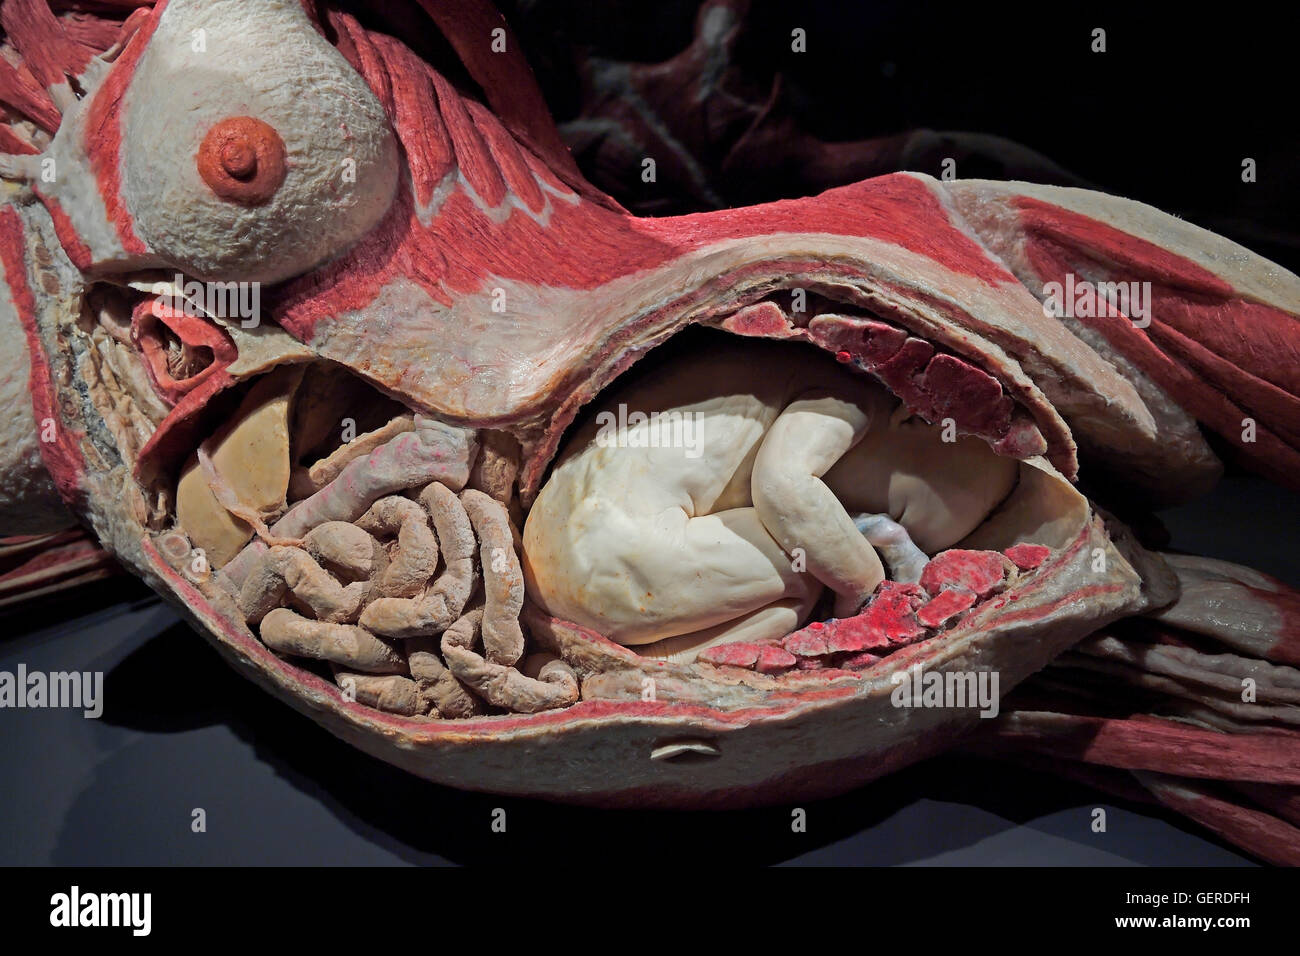 Plastinat, schwangere Frau, 8. Monat, Dr. Gunter von Hagens, MeMu, Menschen Museum, Berlin, Deutschland Stock Photo